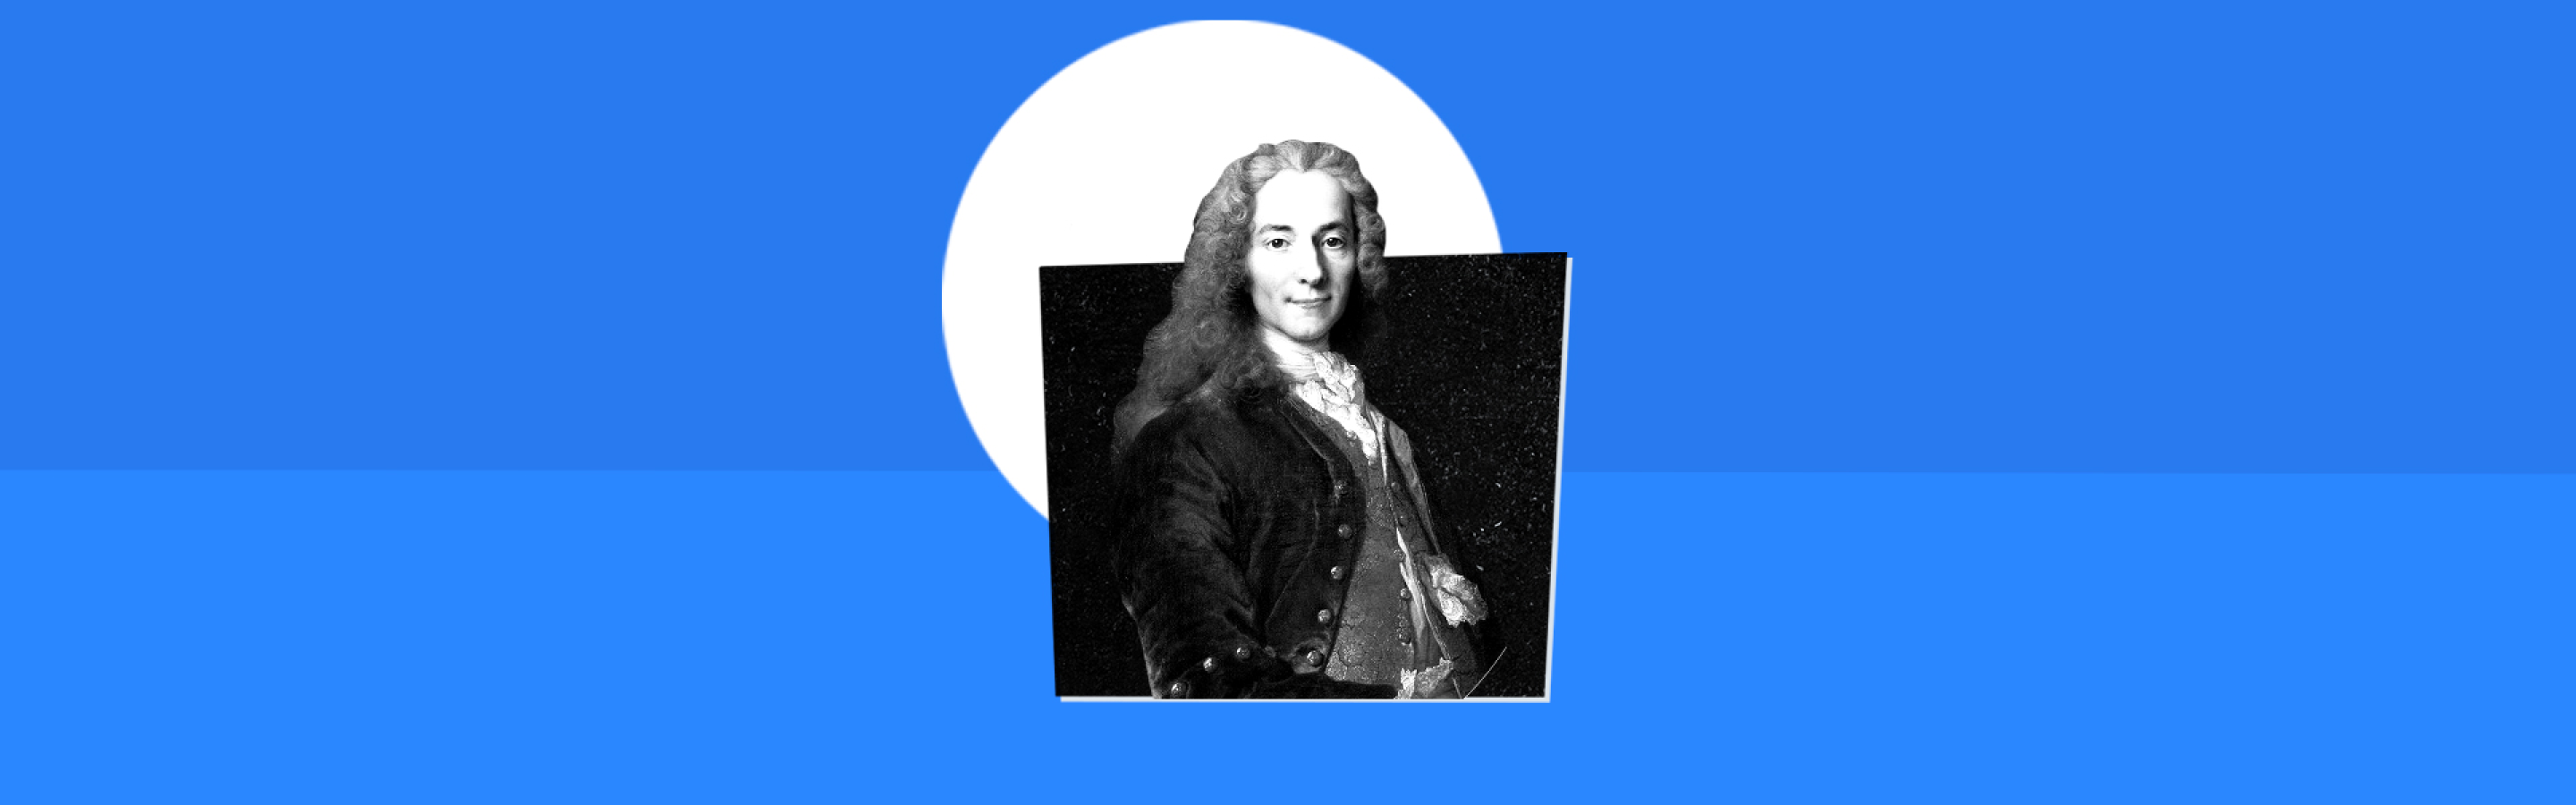 Illustration de Voltaire